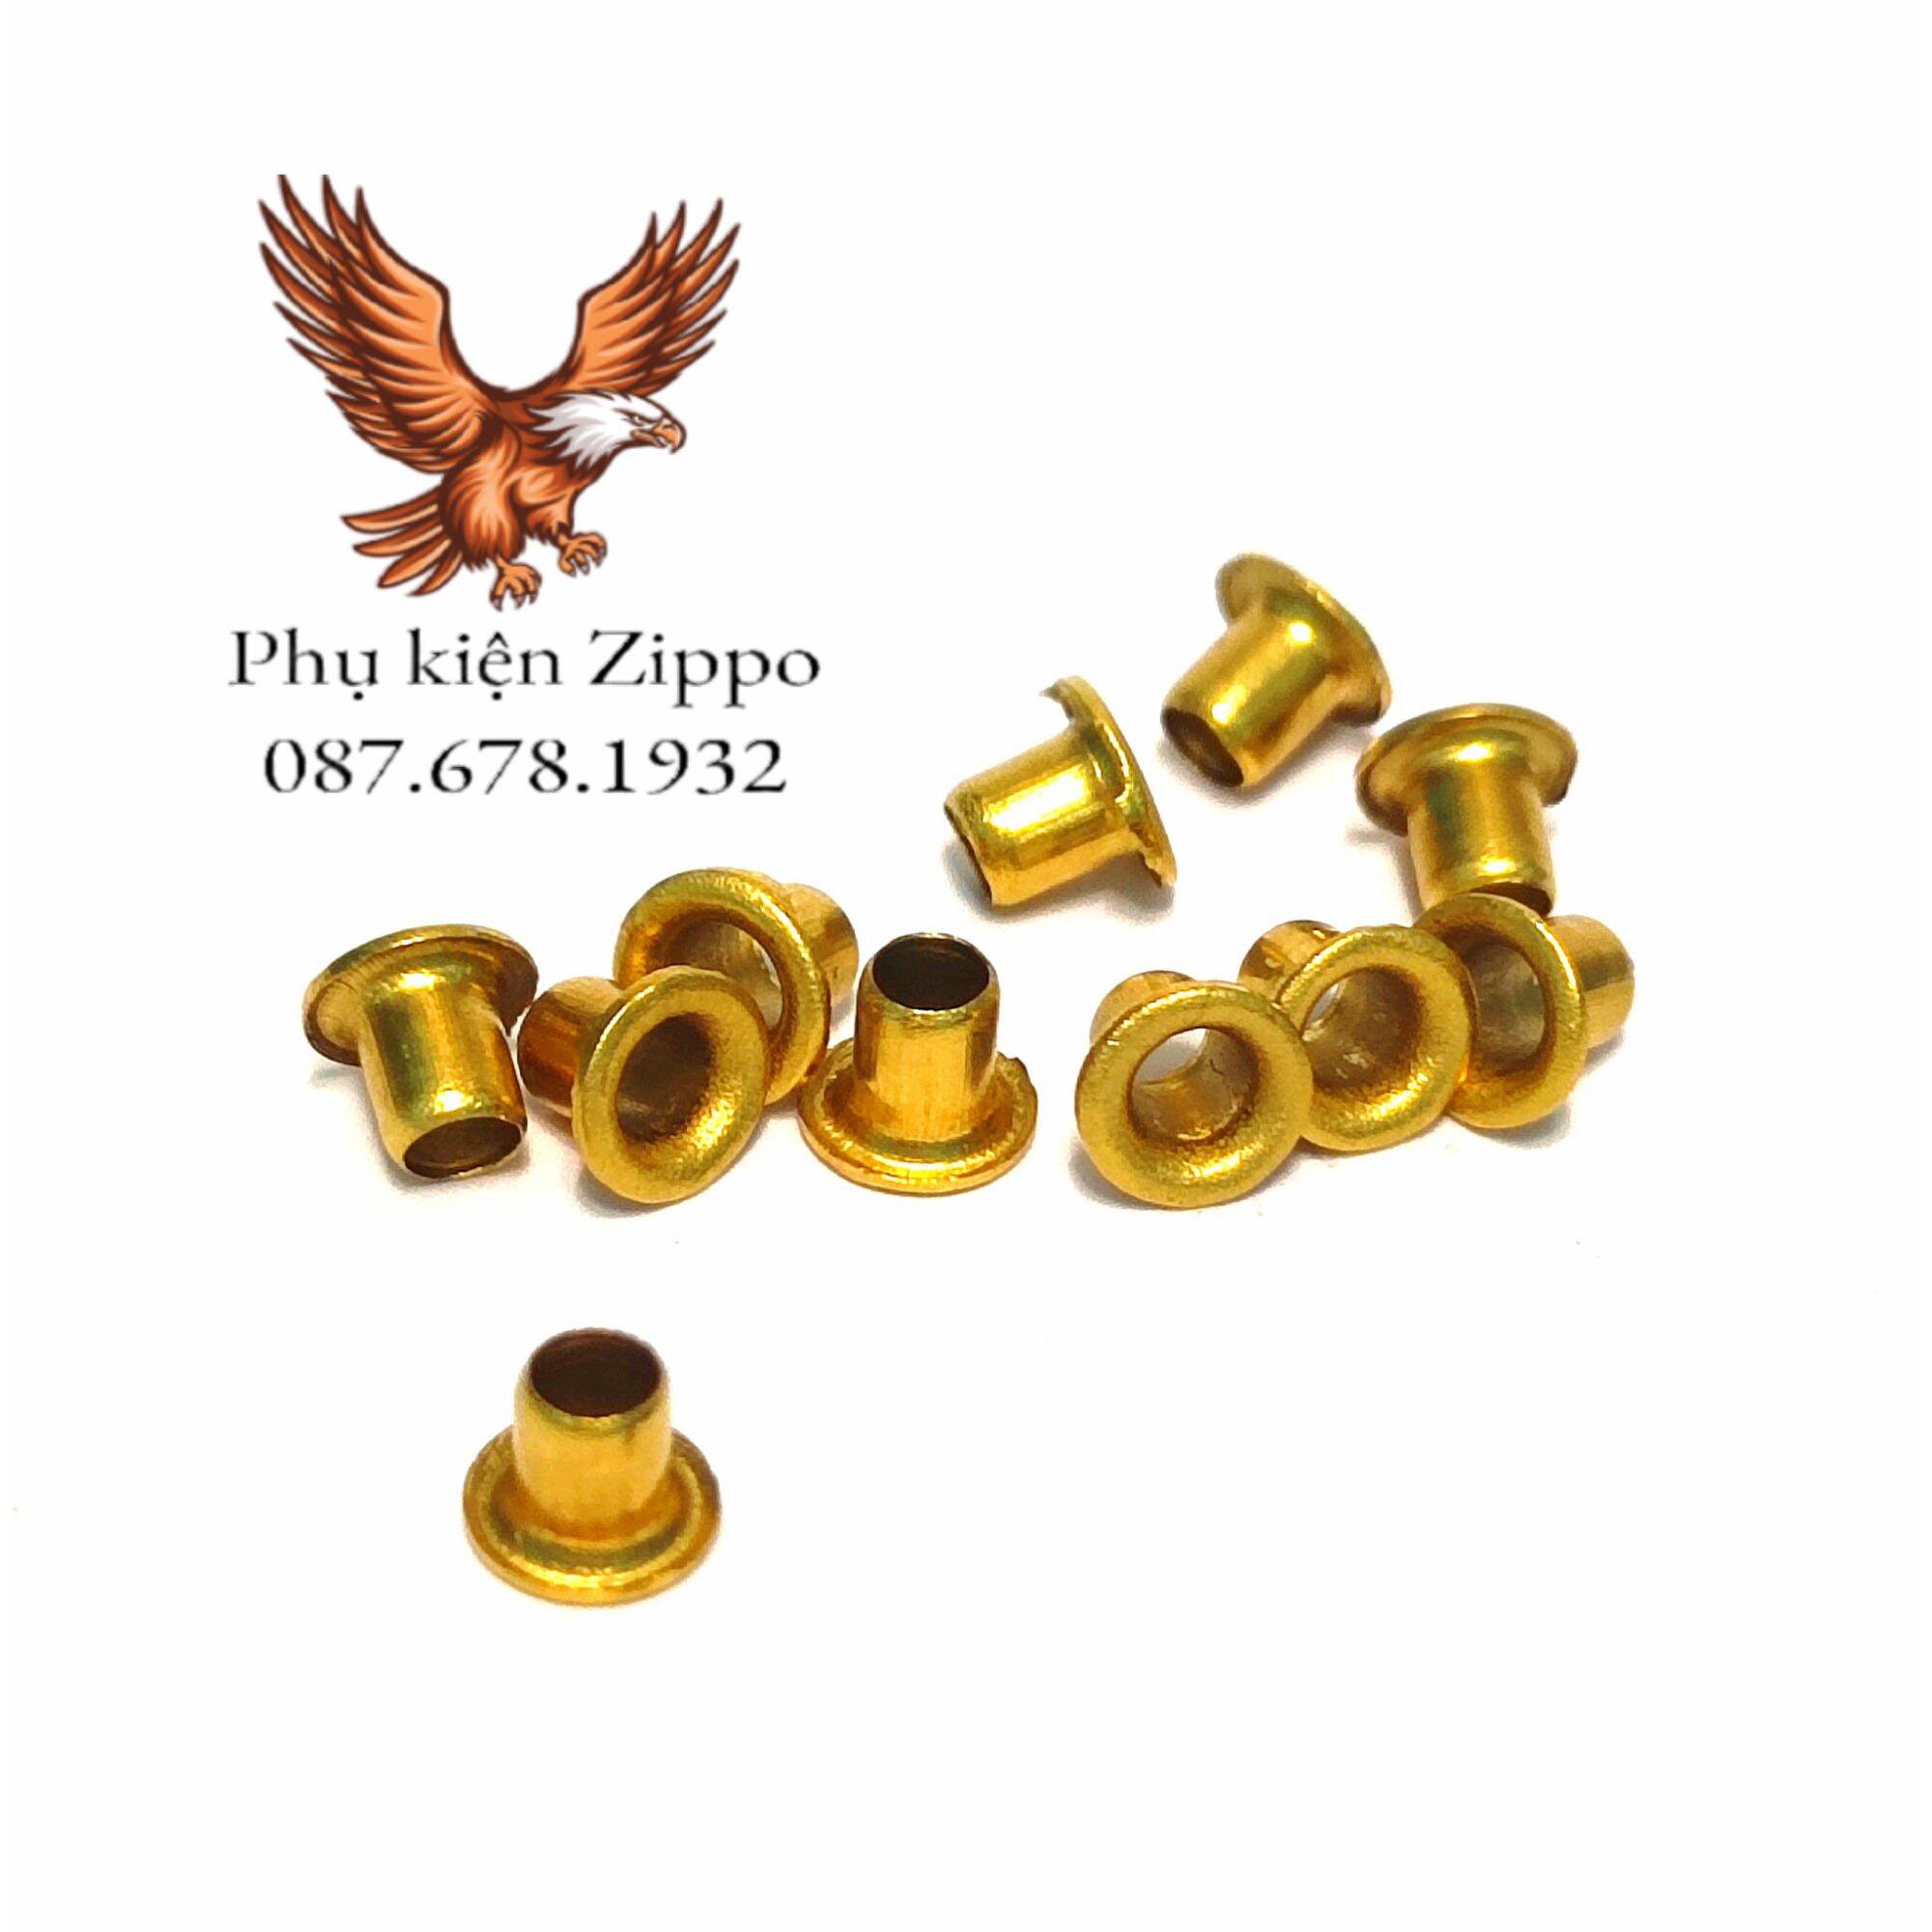 [Phụ kiện Zippo] Chốt tán đồng lưỡi gà Zippo